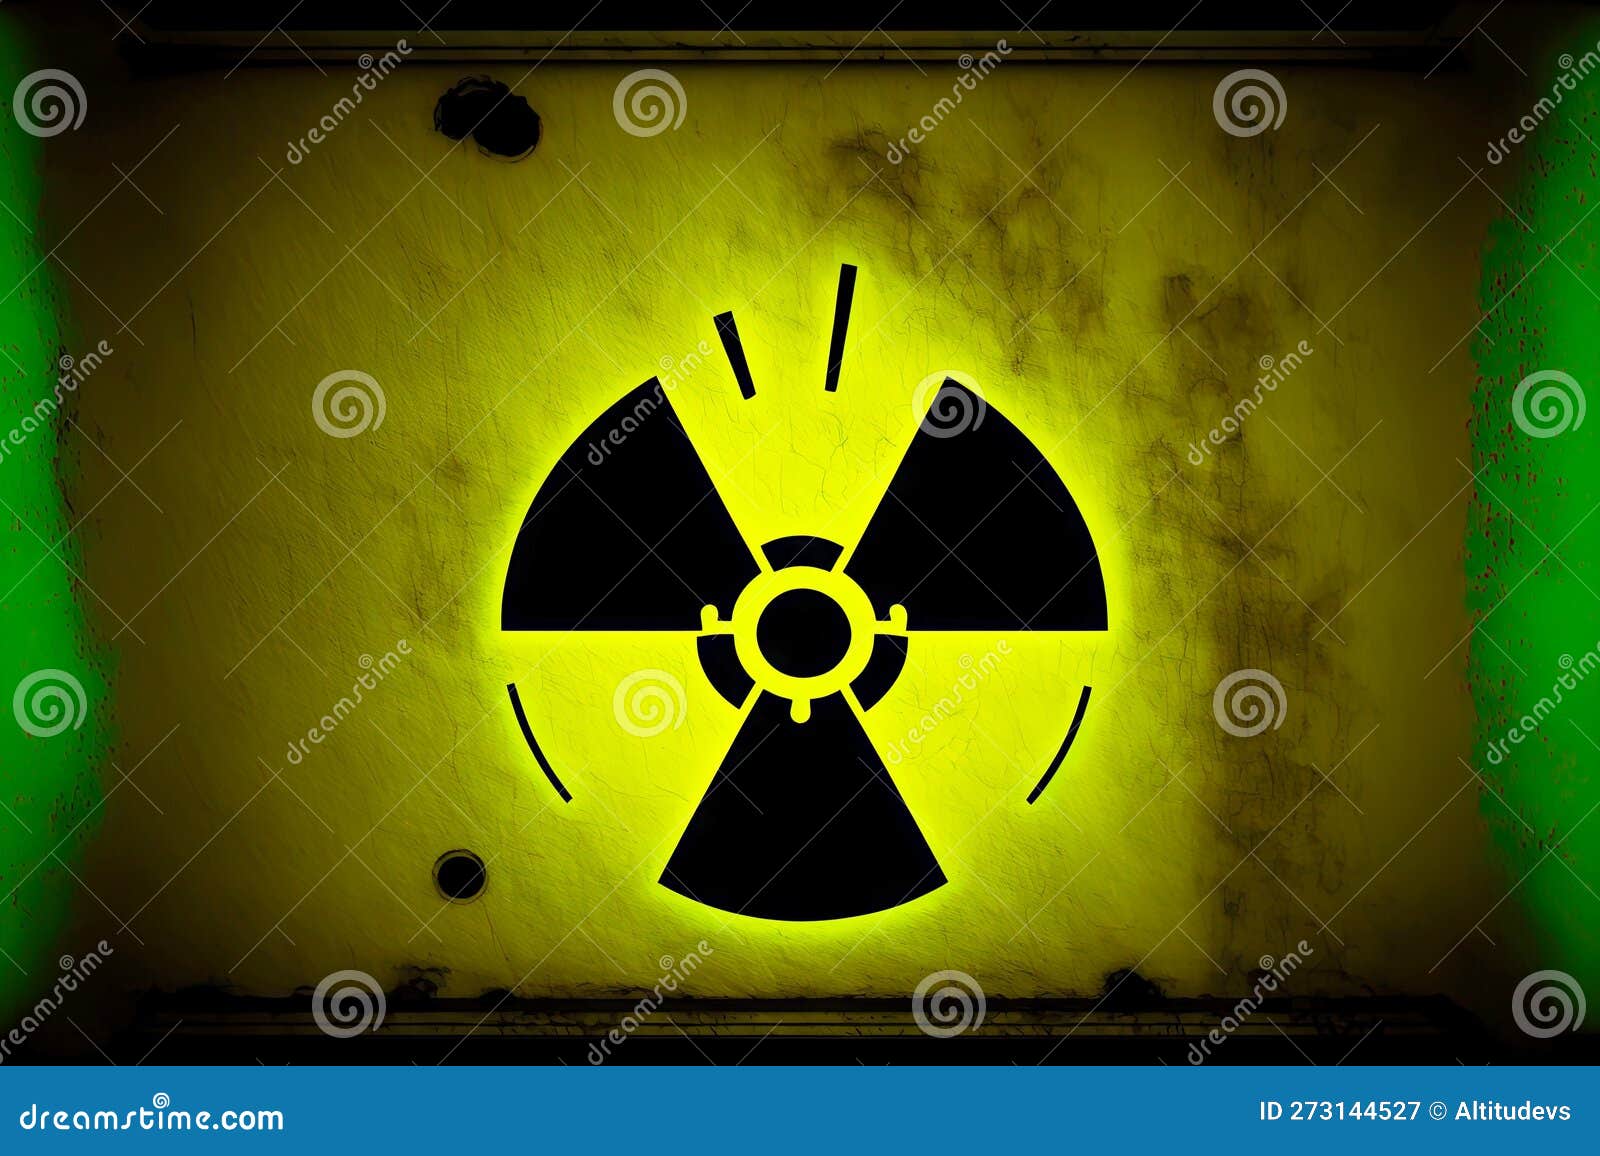 Защита от загрязнения радиоактивными частицами. Значок радиации есть авторское право. Как обозначается радиация на приборах.